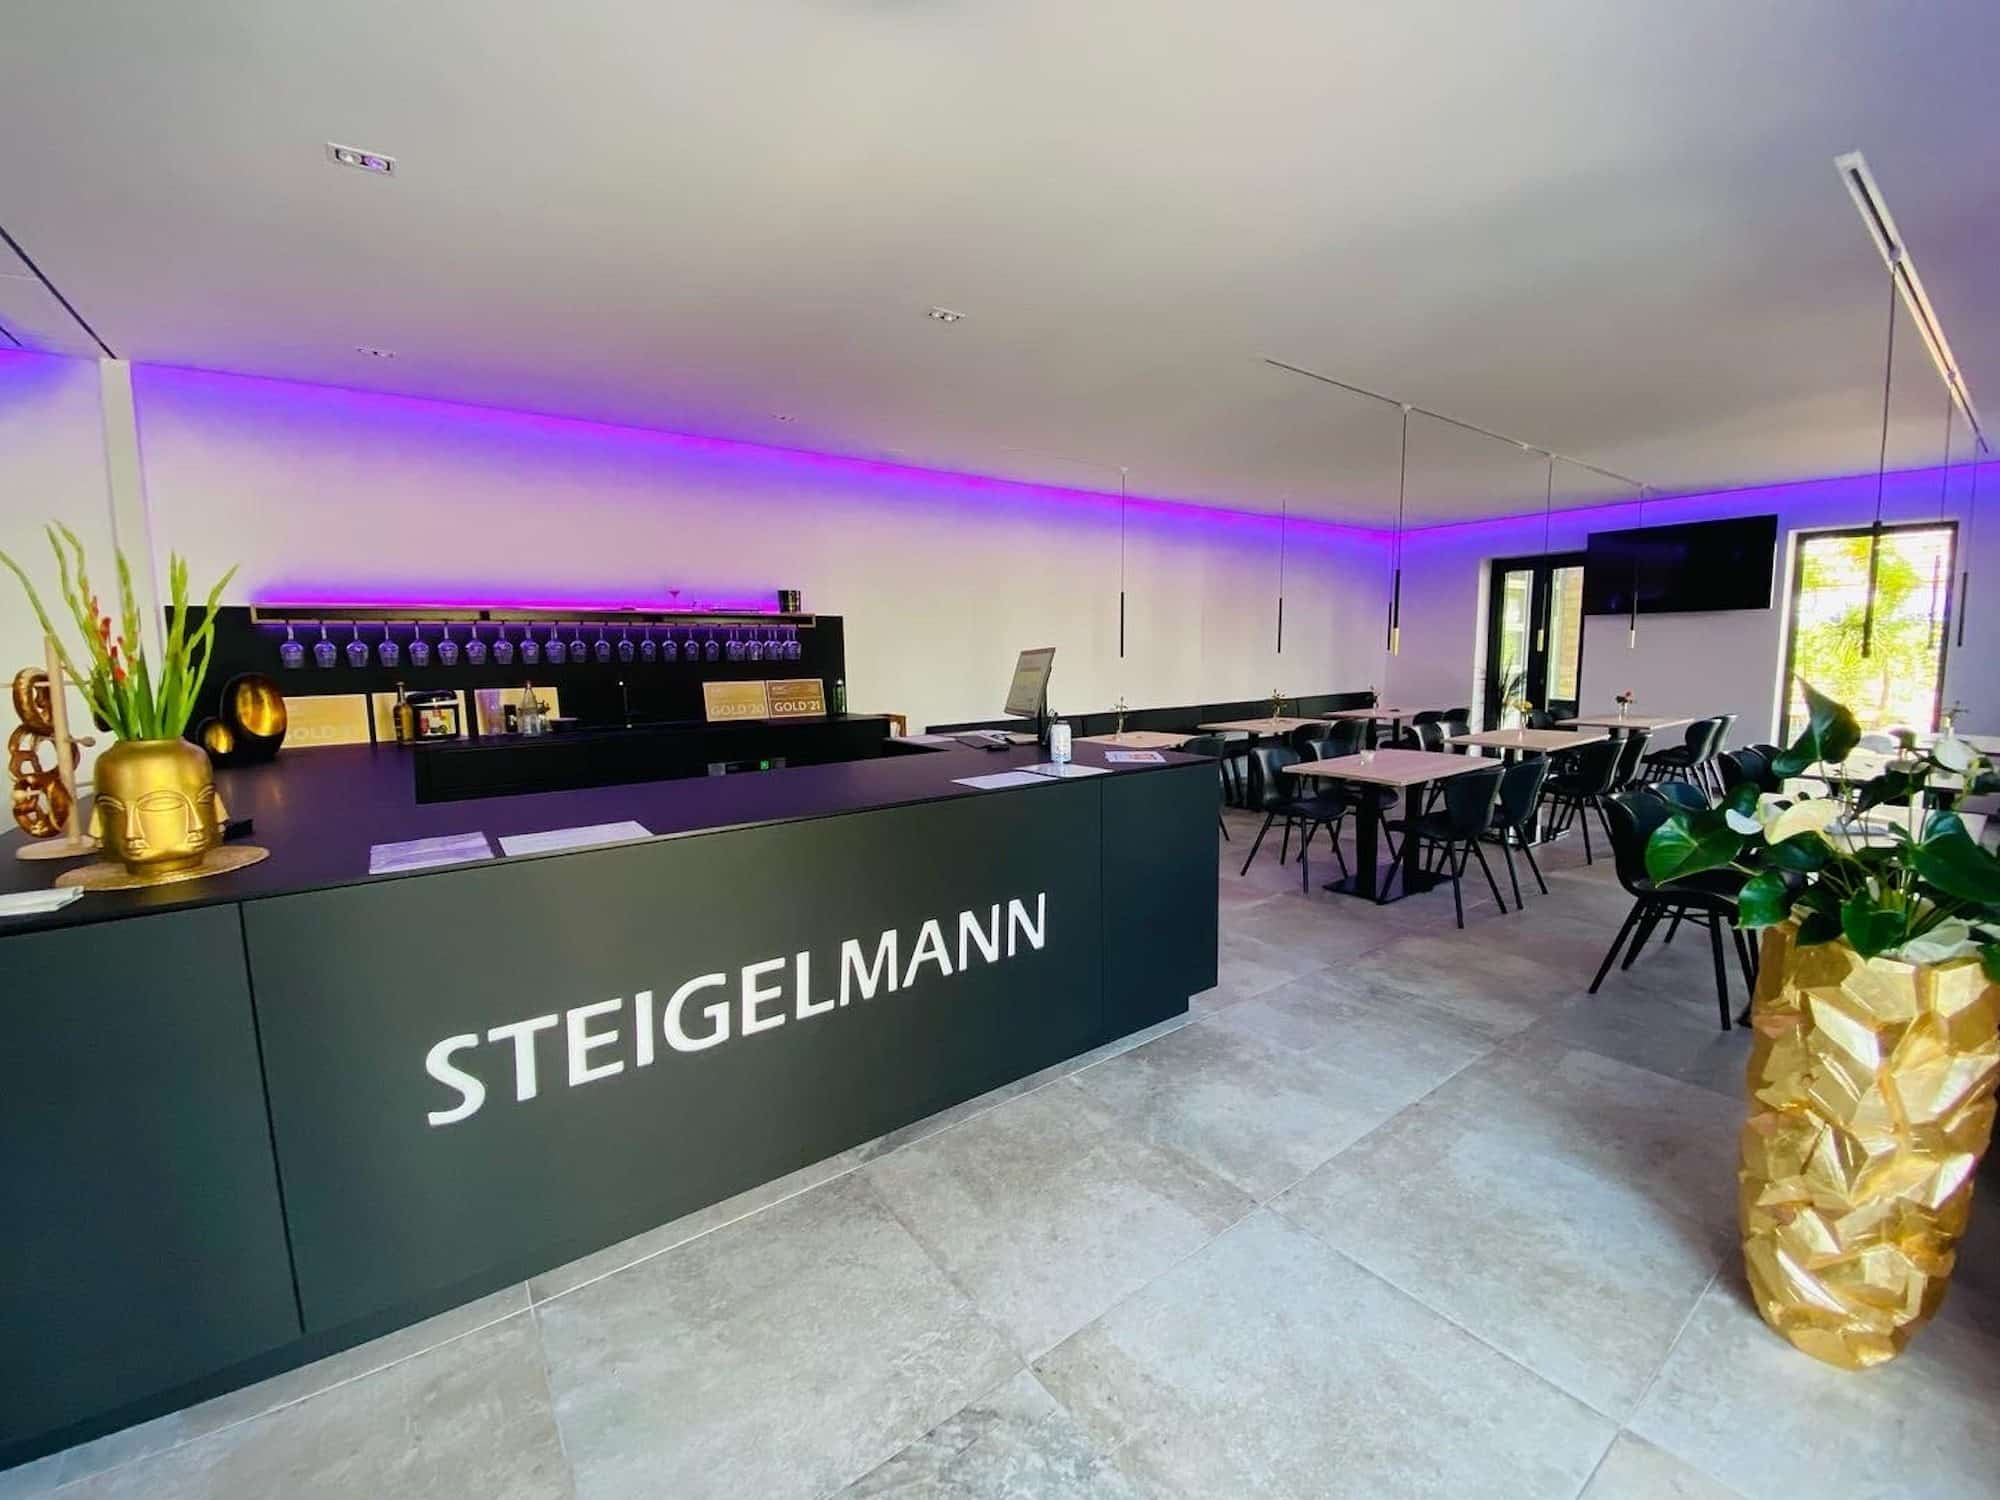 Der verkostungsraum unseres PIWI Weingut des Jahres - dem Alten Weingut Steigelmann